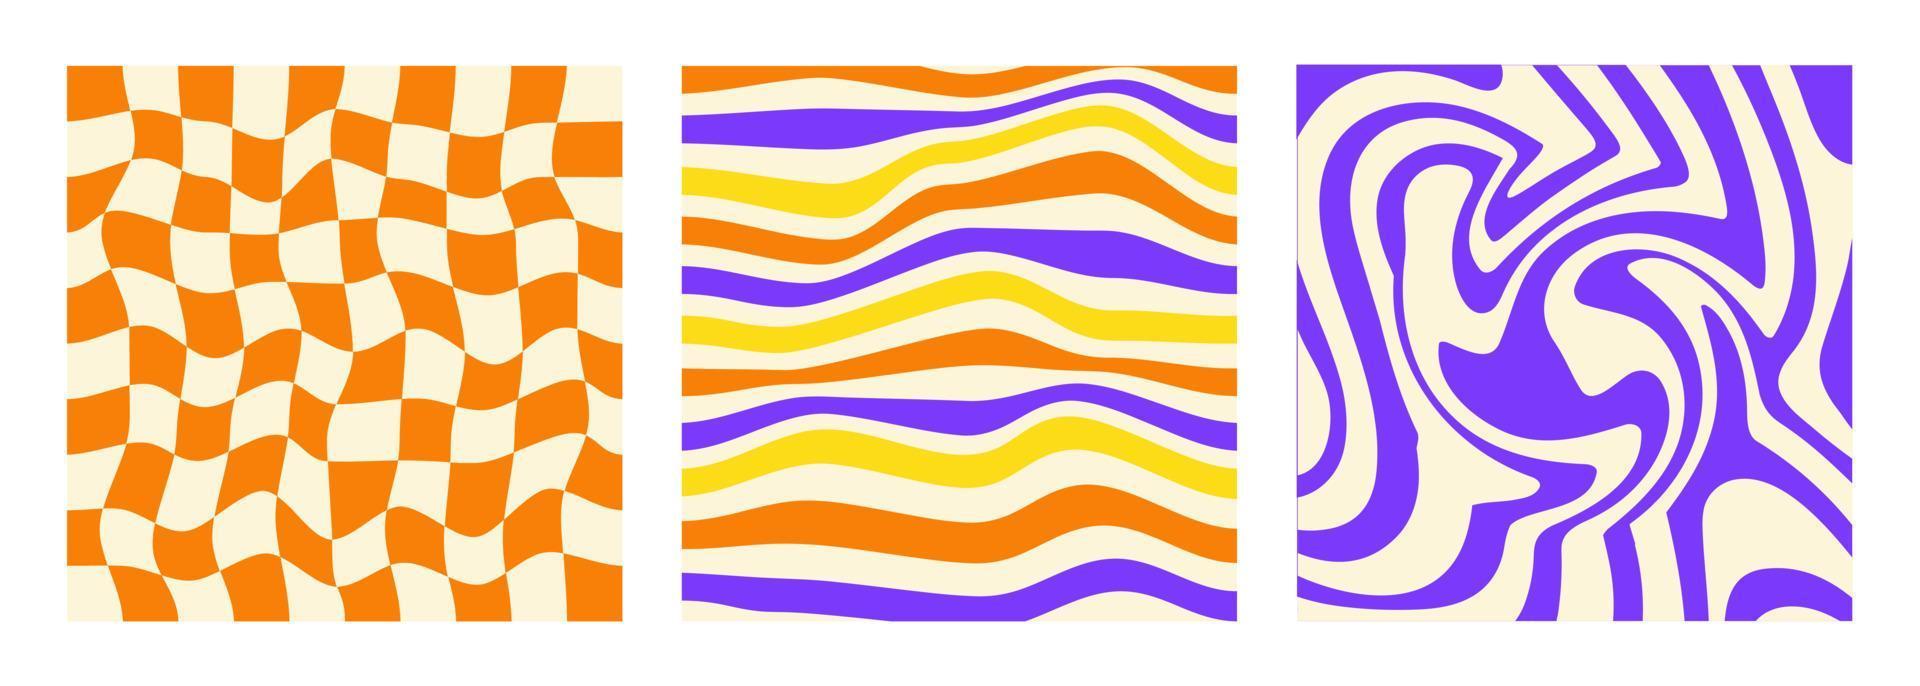 Reihe von quadratischen Hintergründen im Retro-Stil der 70er, 80er Jahre. Grooviges Hippie-abstraktes psychedelisches Design. Vektor-Illustration vektor